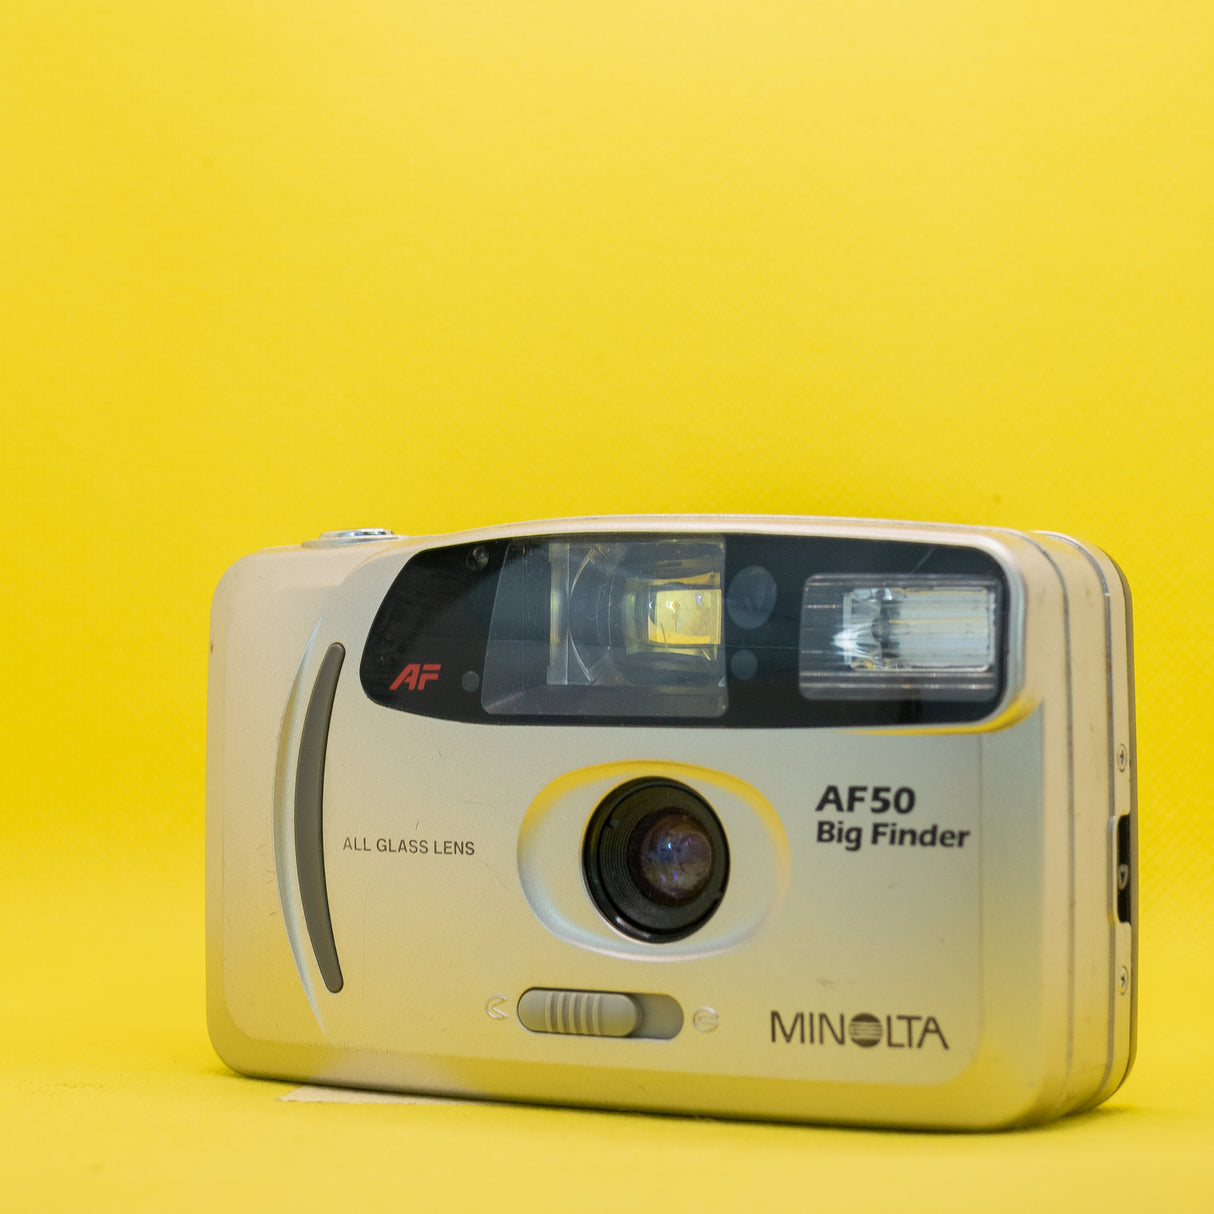 Minolta AF50 Big Finder